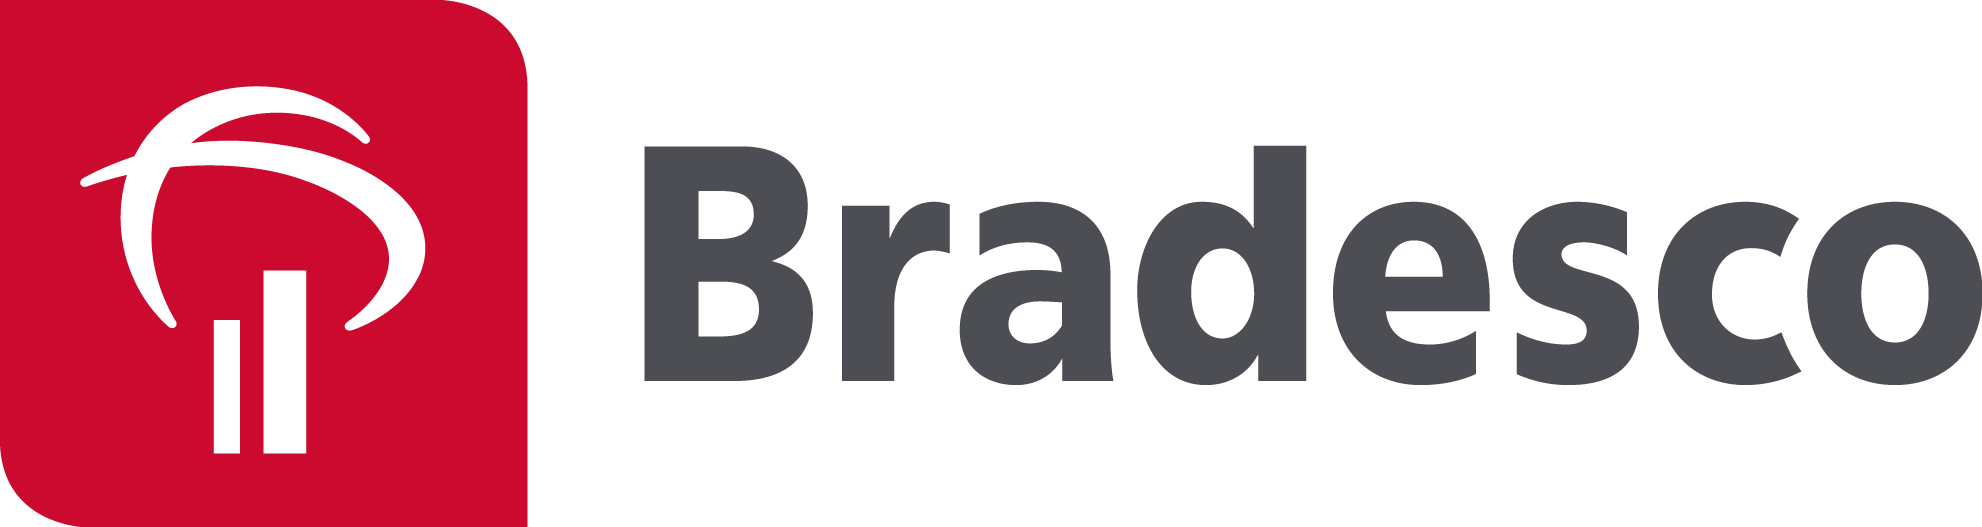 Bradesco Prime